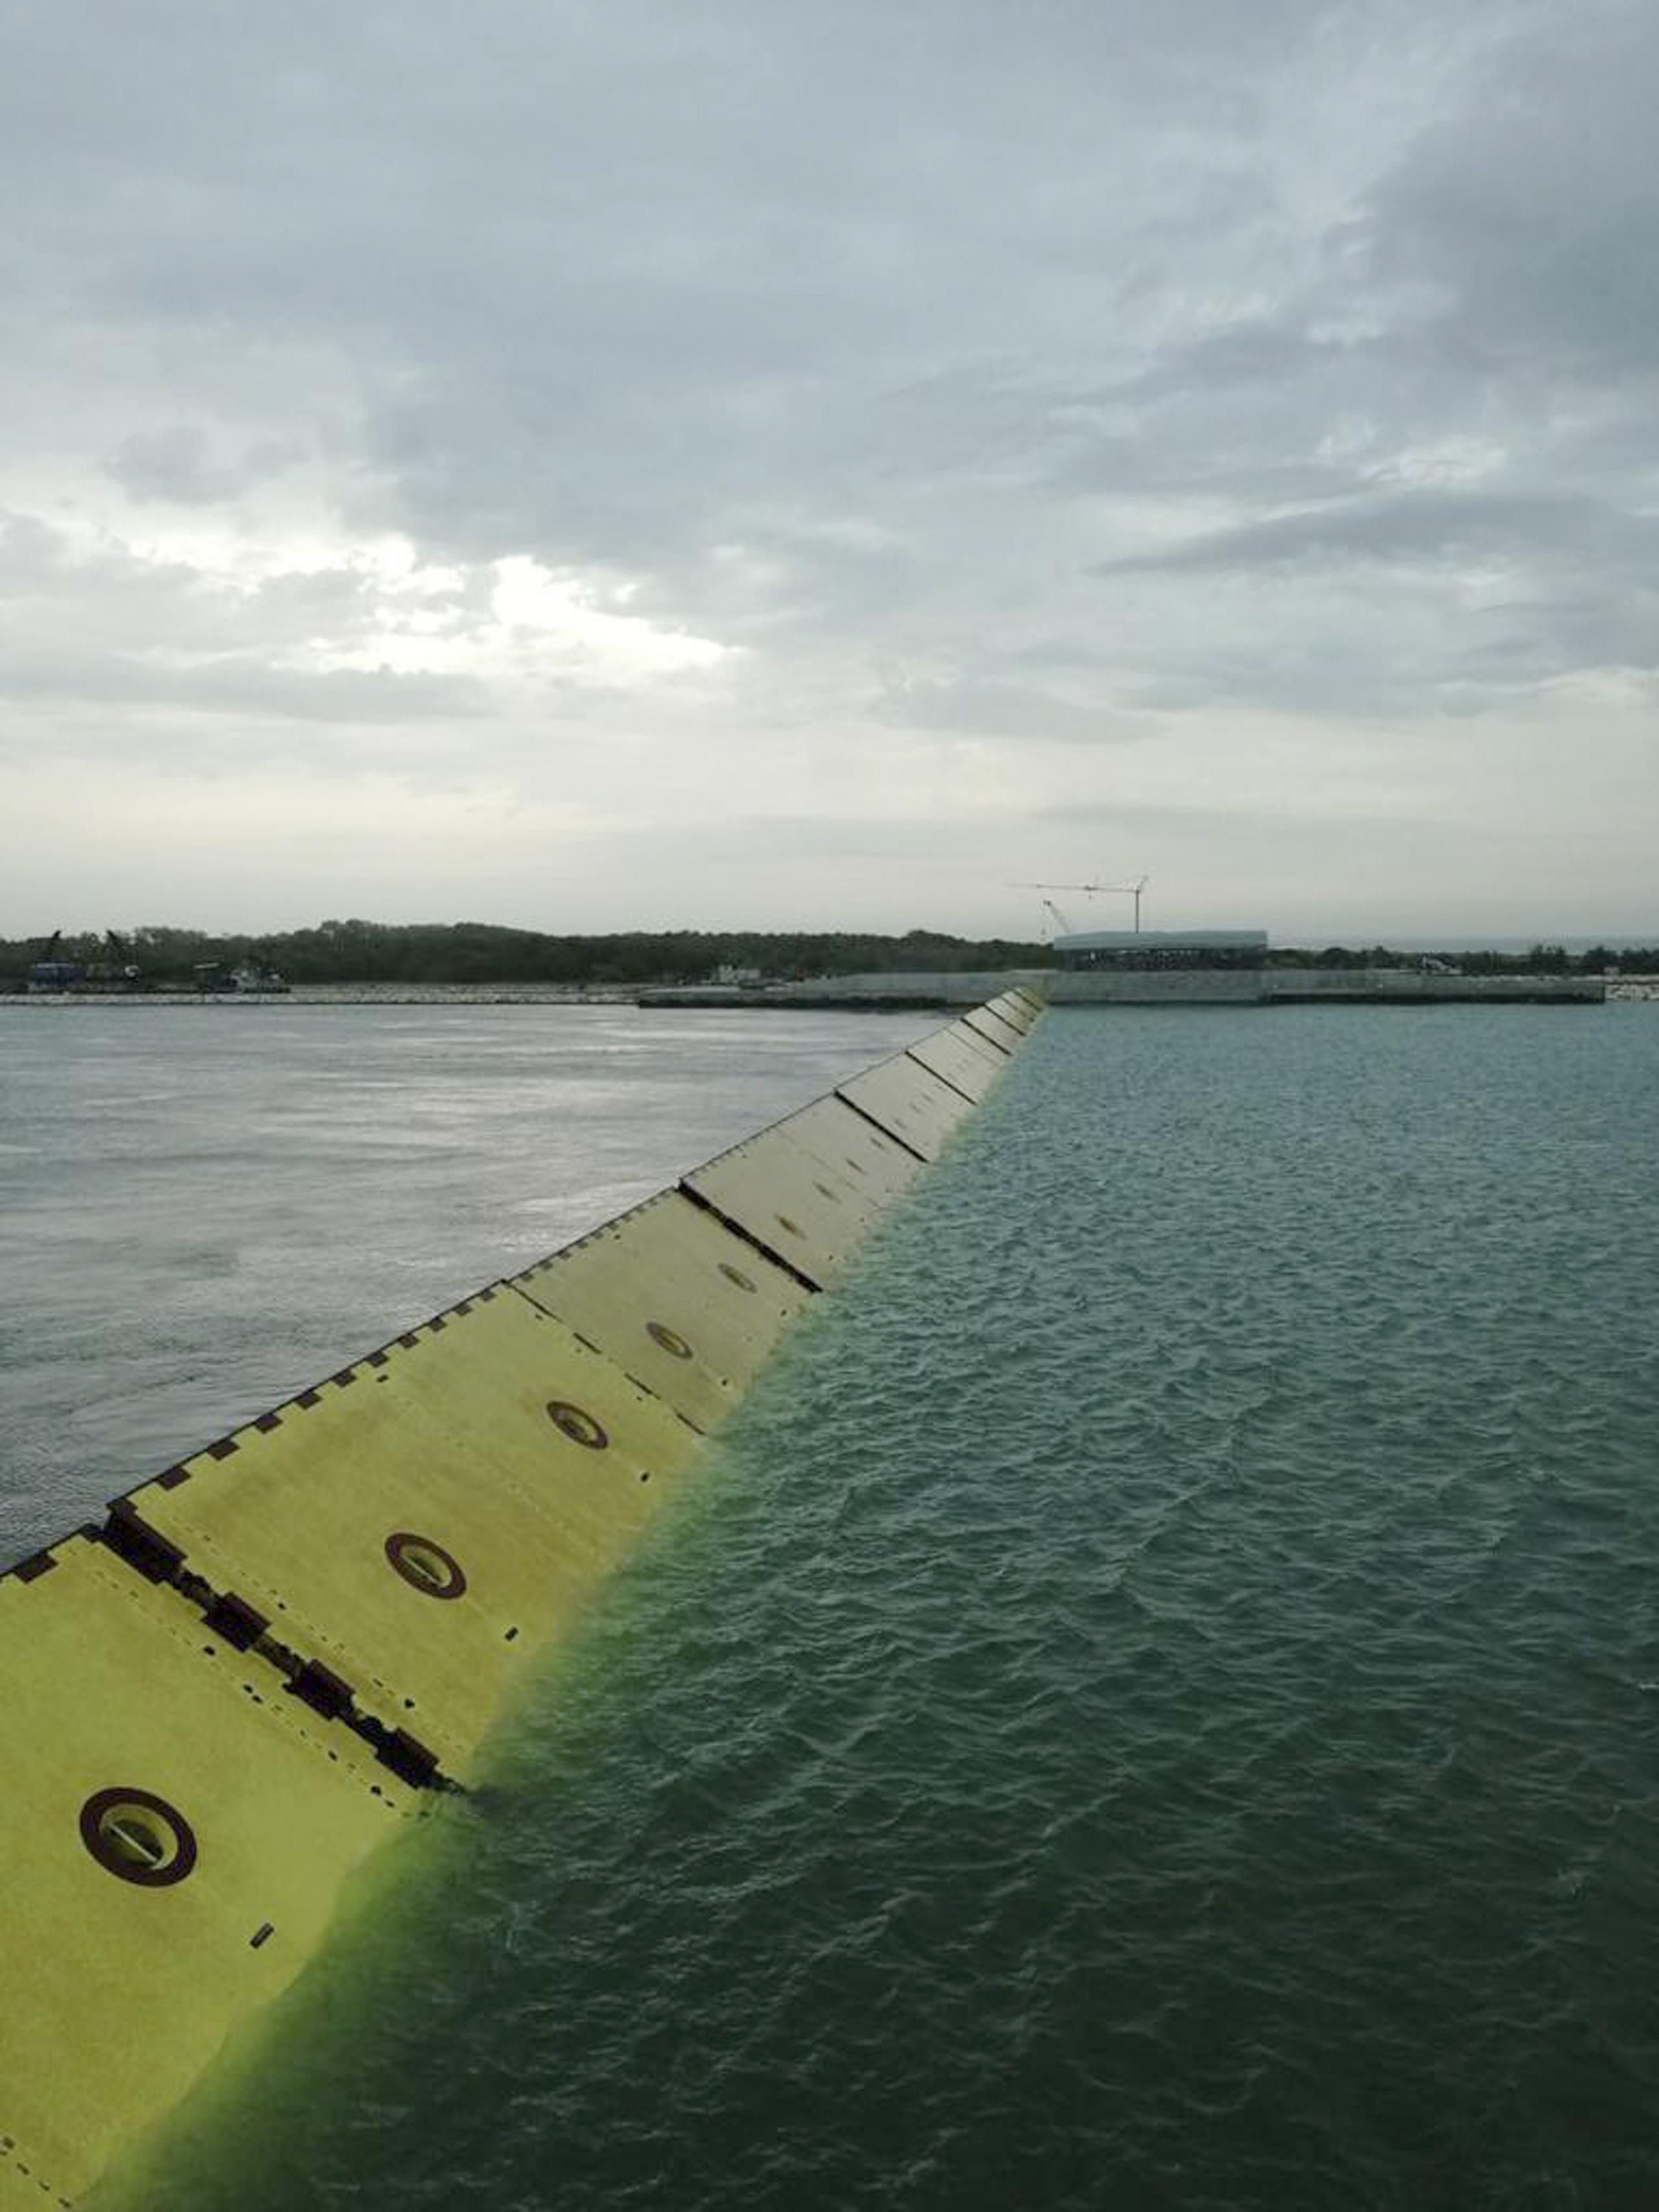 Unas nuevas barreras submarinas en posición erigida durante una marea alta en la laguna de Venecia, Italia, el sábado 3 de octubre de 2020.